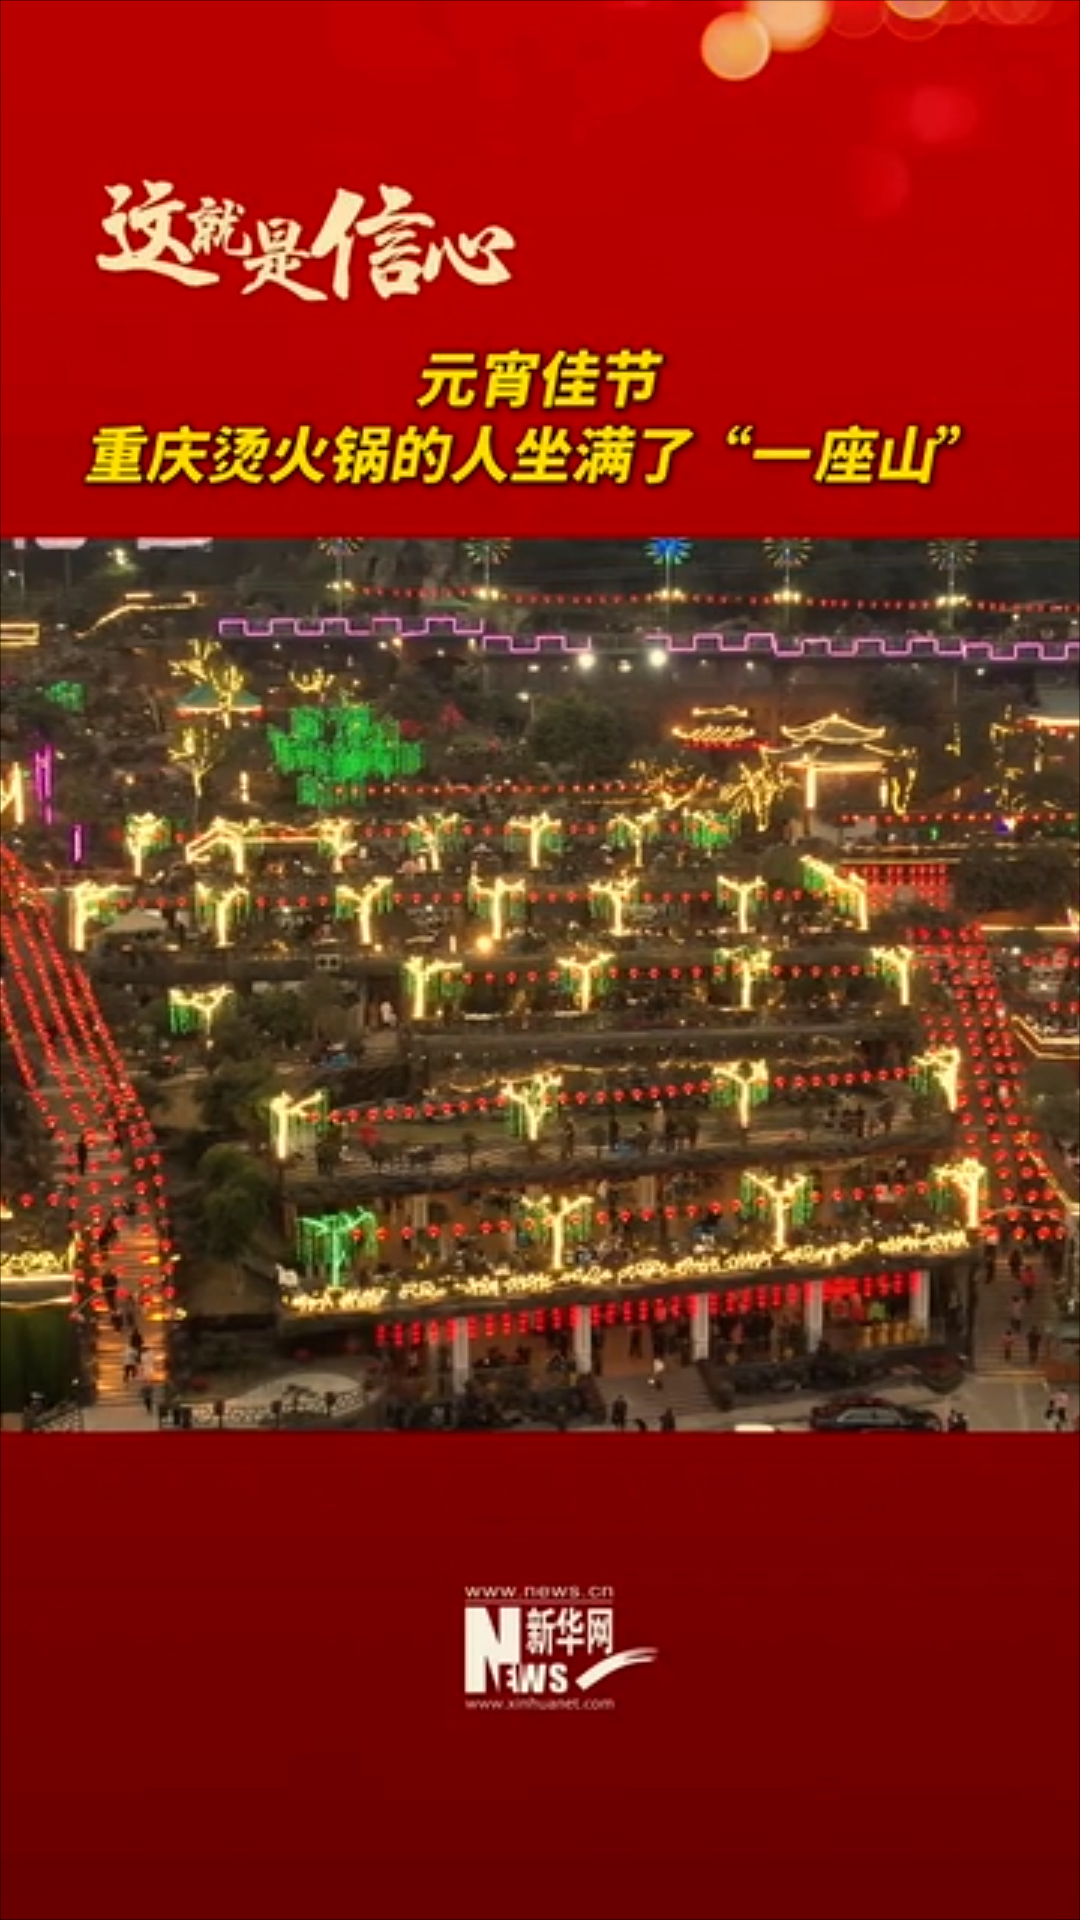 元宵佳节 重庆烫火锅的人坐满了“一座山”